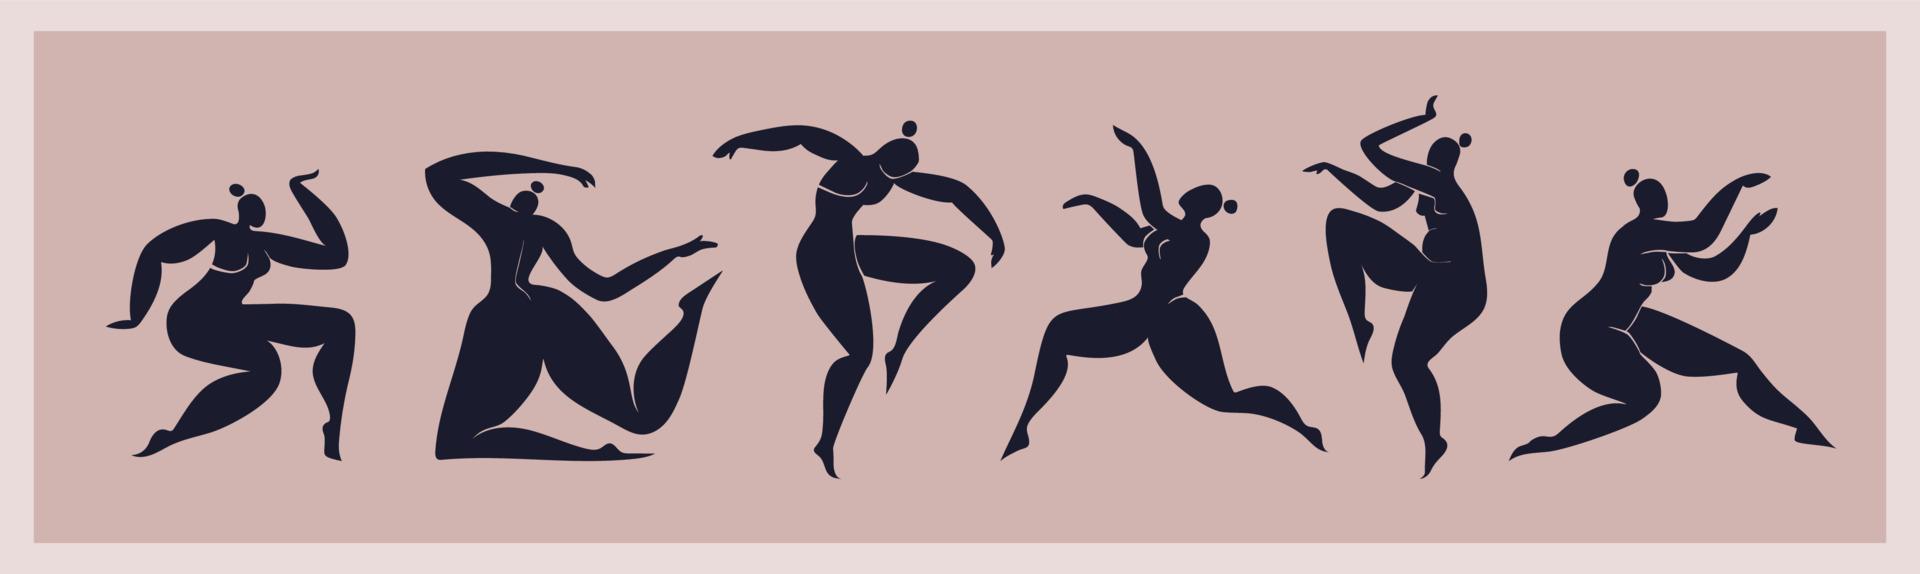 matisse inspiró a mujeres bailando aisladas. conjunto de siluetas femeninas negras recortadas. mujeres con curvas abstractas cortadas de papel. ilustración vectorial inspirada en matisse. vector